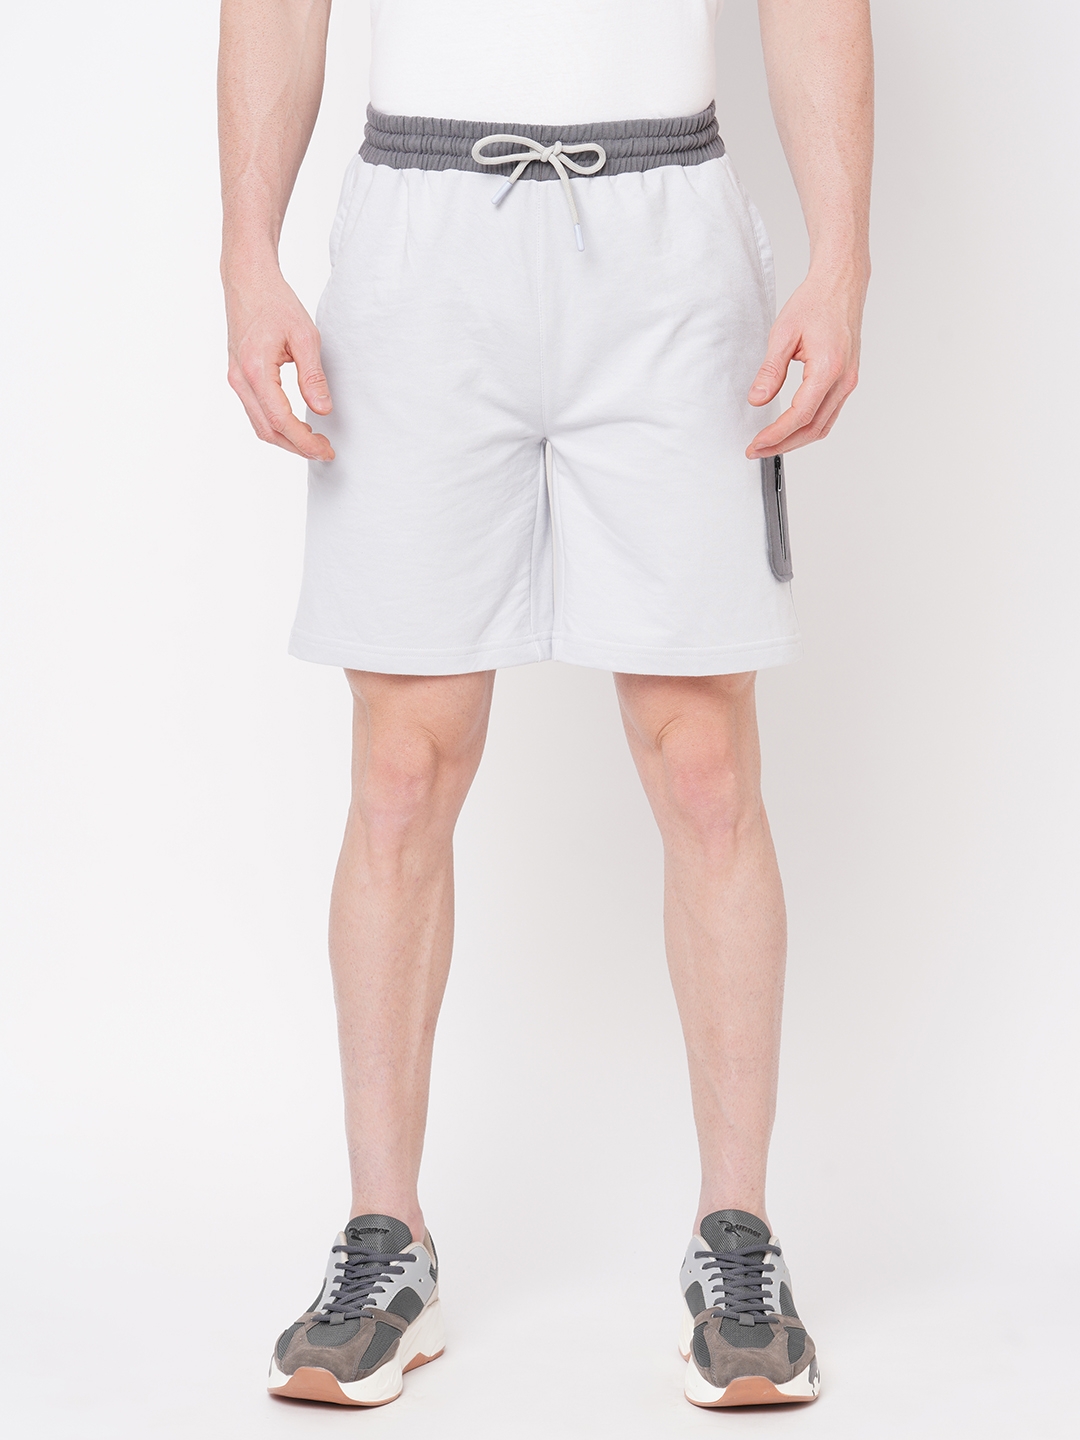 Men's  Slim Fit Cotton Grey Shorts